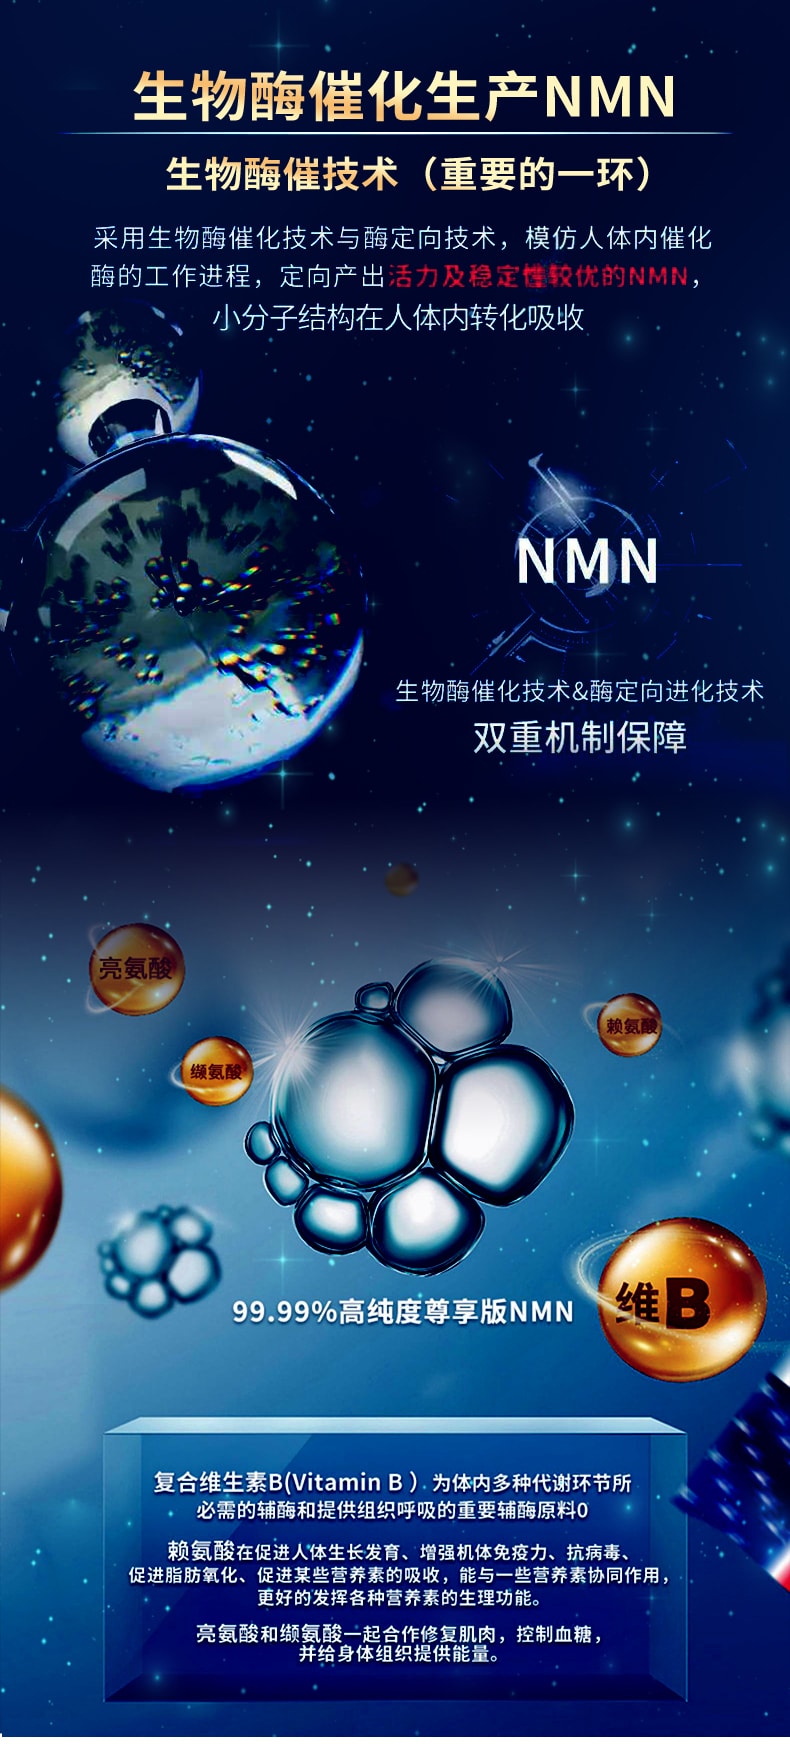 美国 NMN 9000+ 抗衰老 逆龄 免疫球蛋白 高纯度 60capsules/1bottle EXP:08/24(特价不退不换)